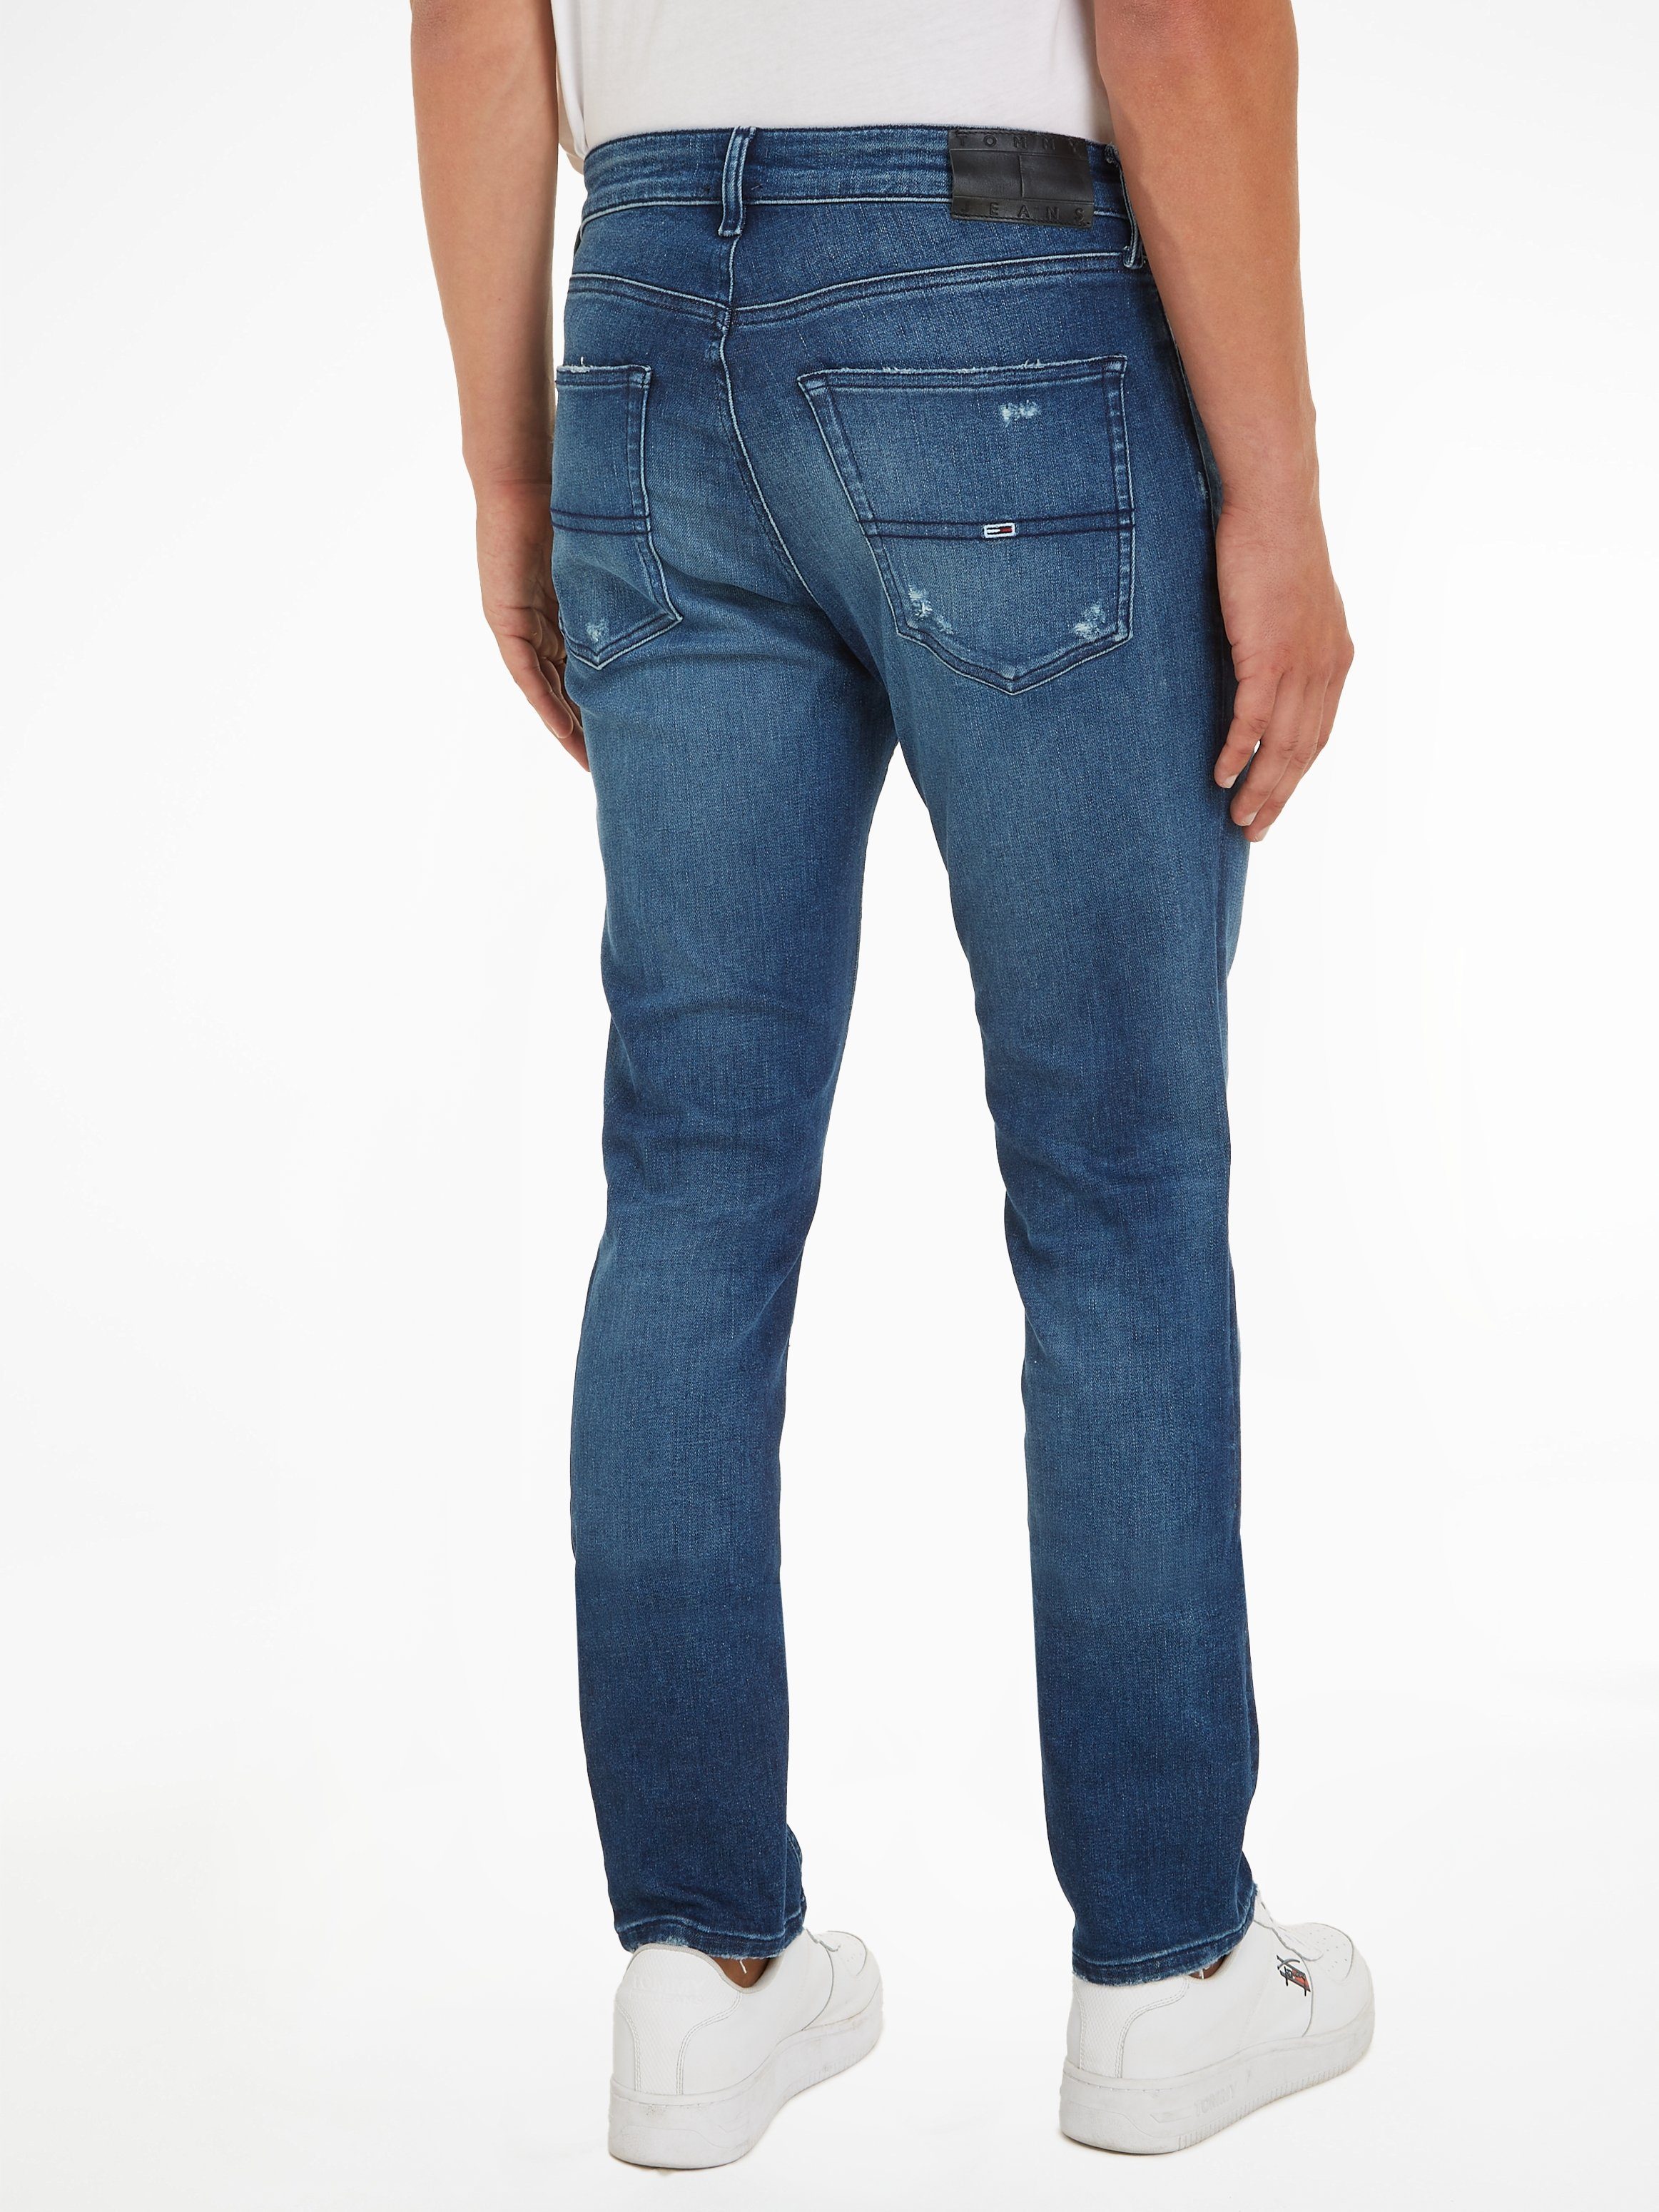 SLIM mit und Jeans Abrieb- SCANTON Tommy Slim-fit-Jeans Destroyeddetails